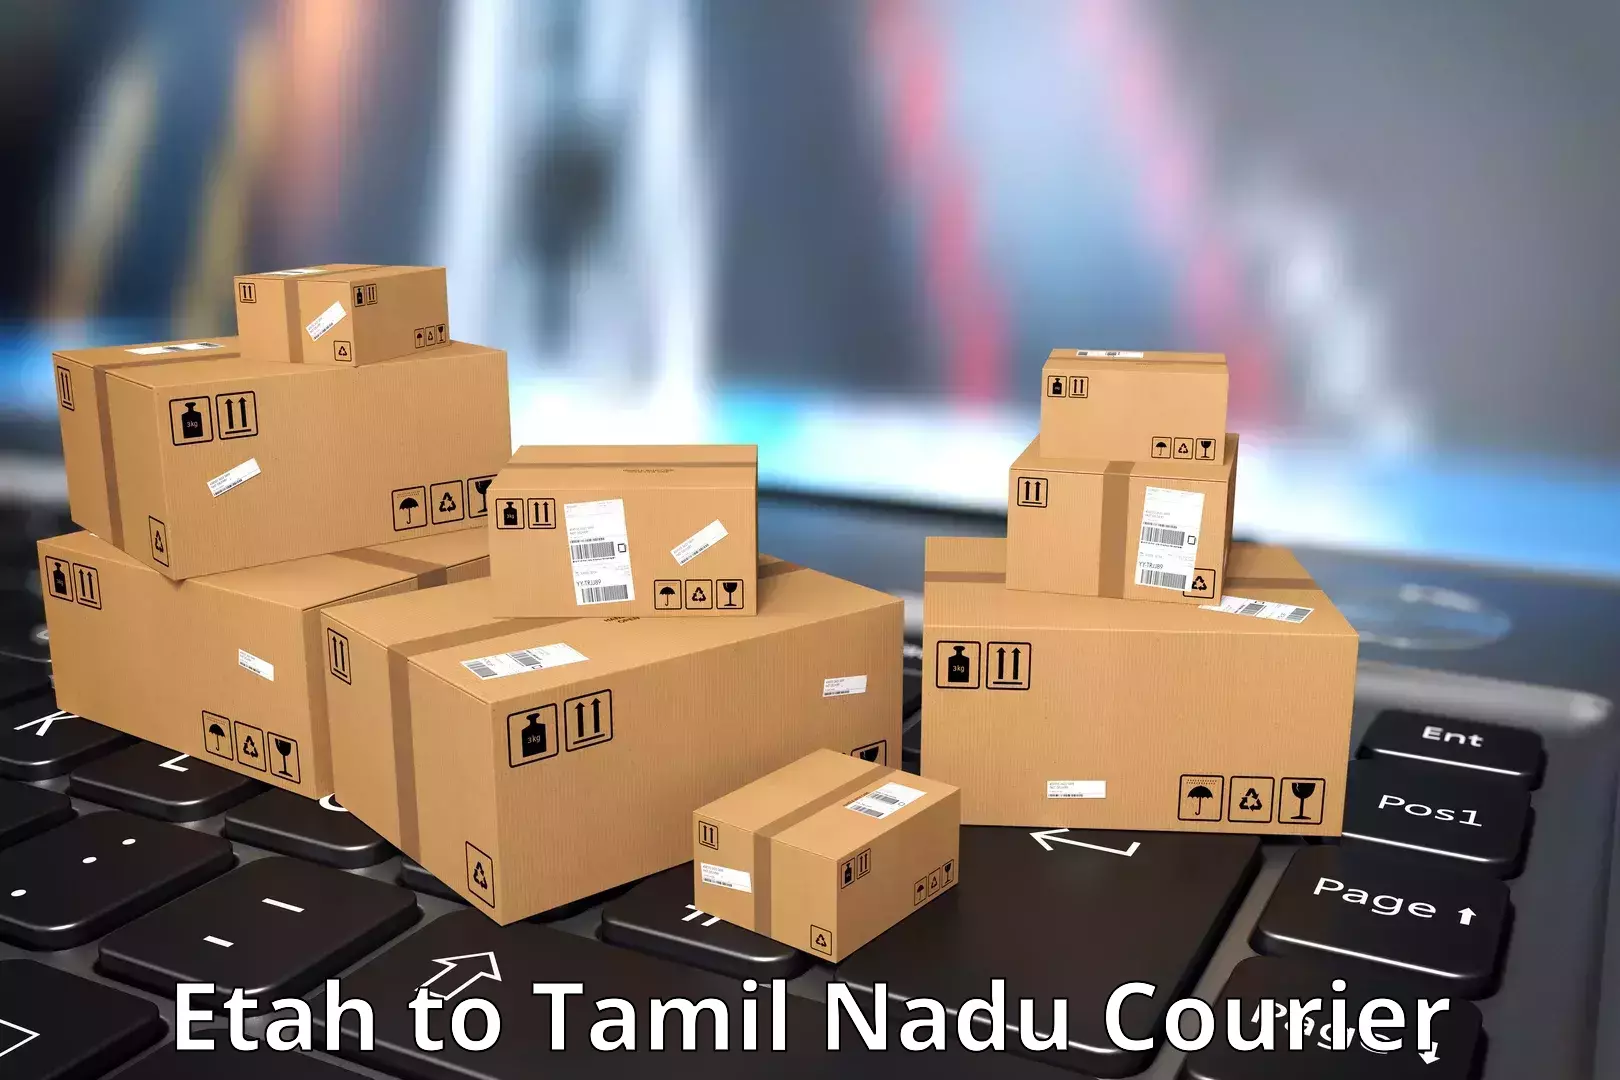 Affordable shipping rates Etah to Tiruturaipundi